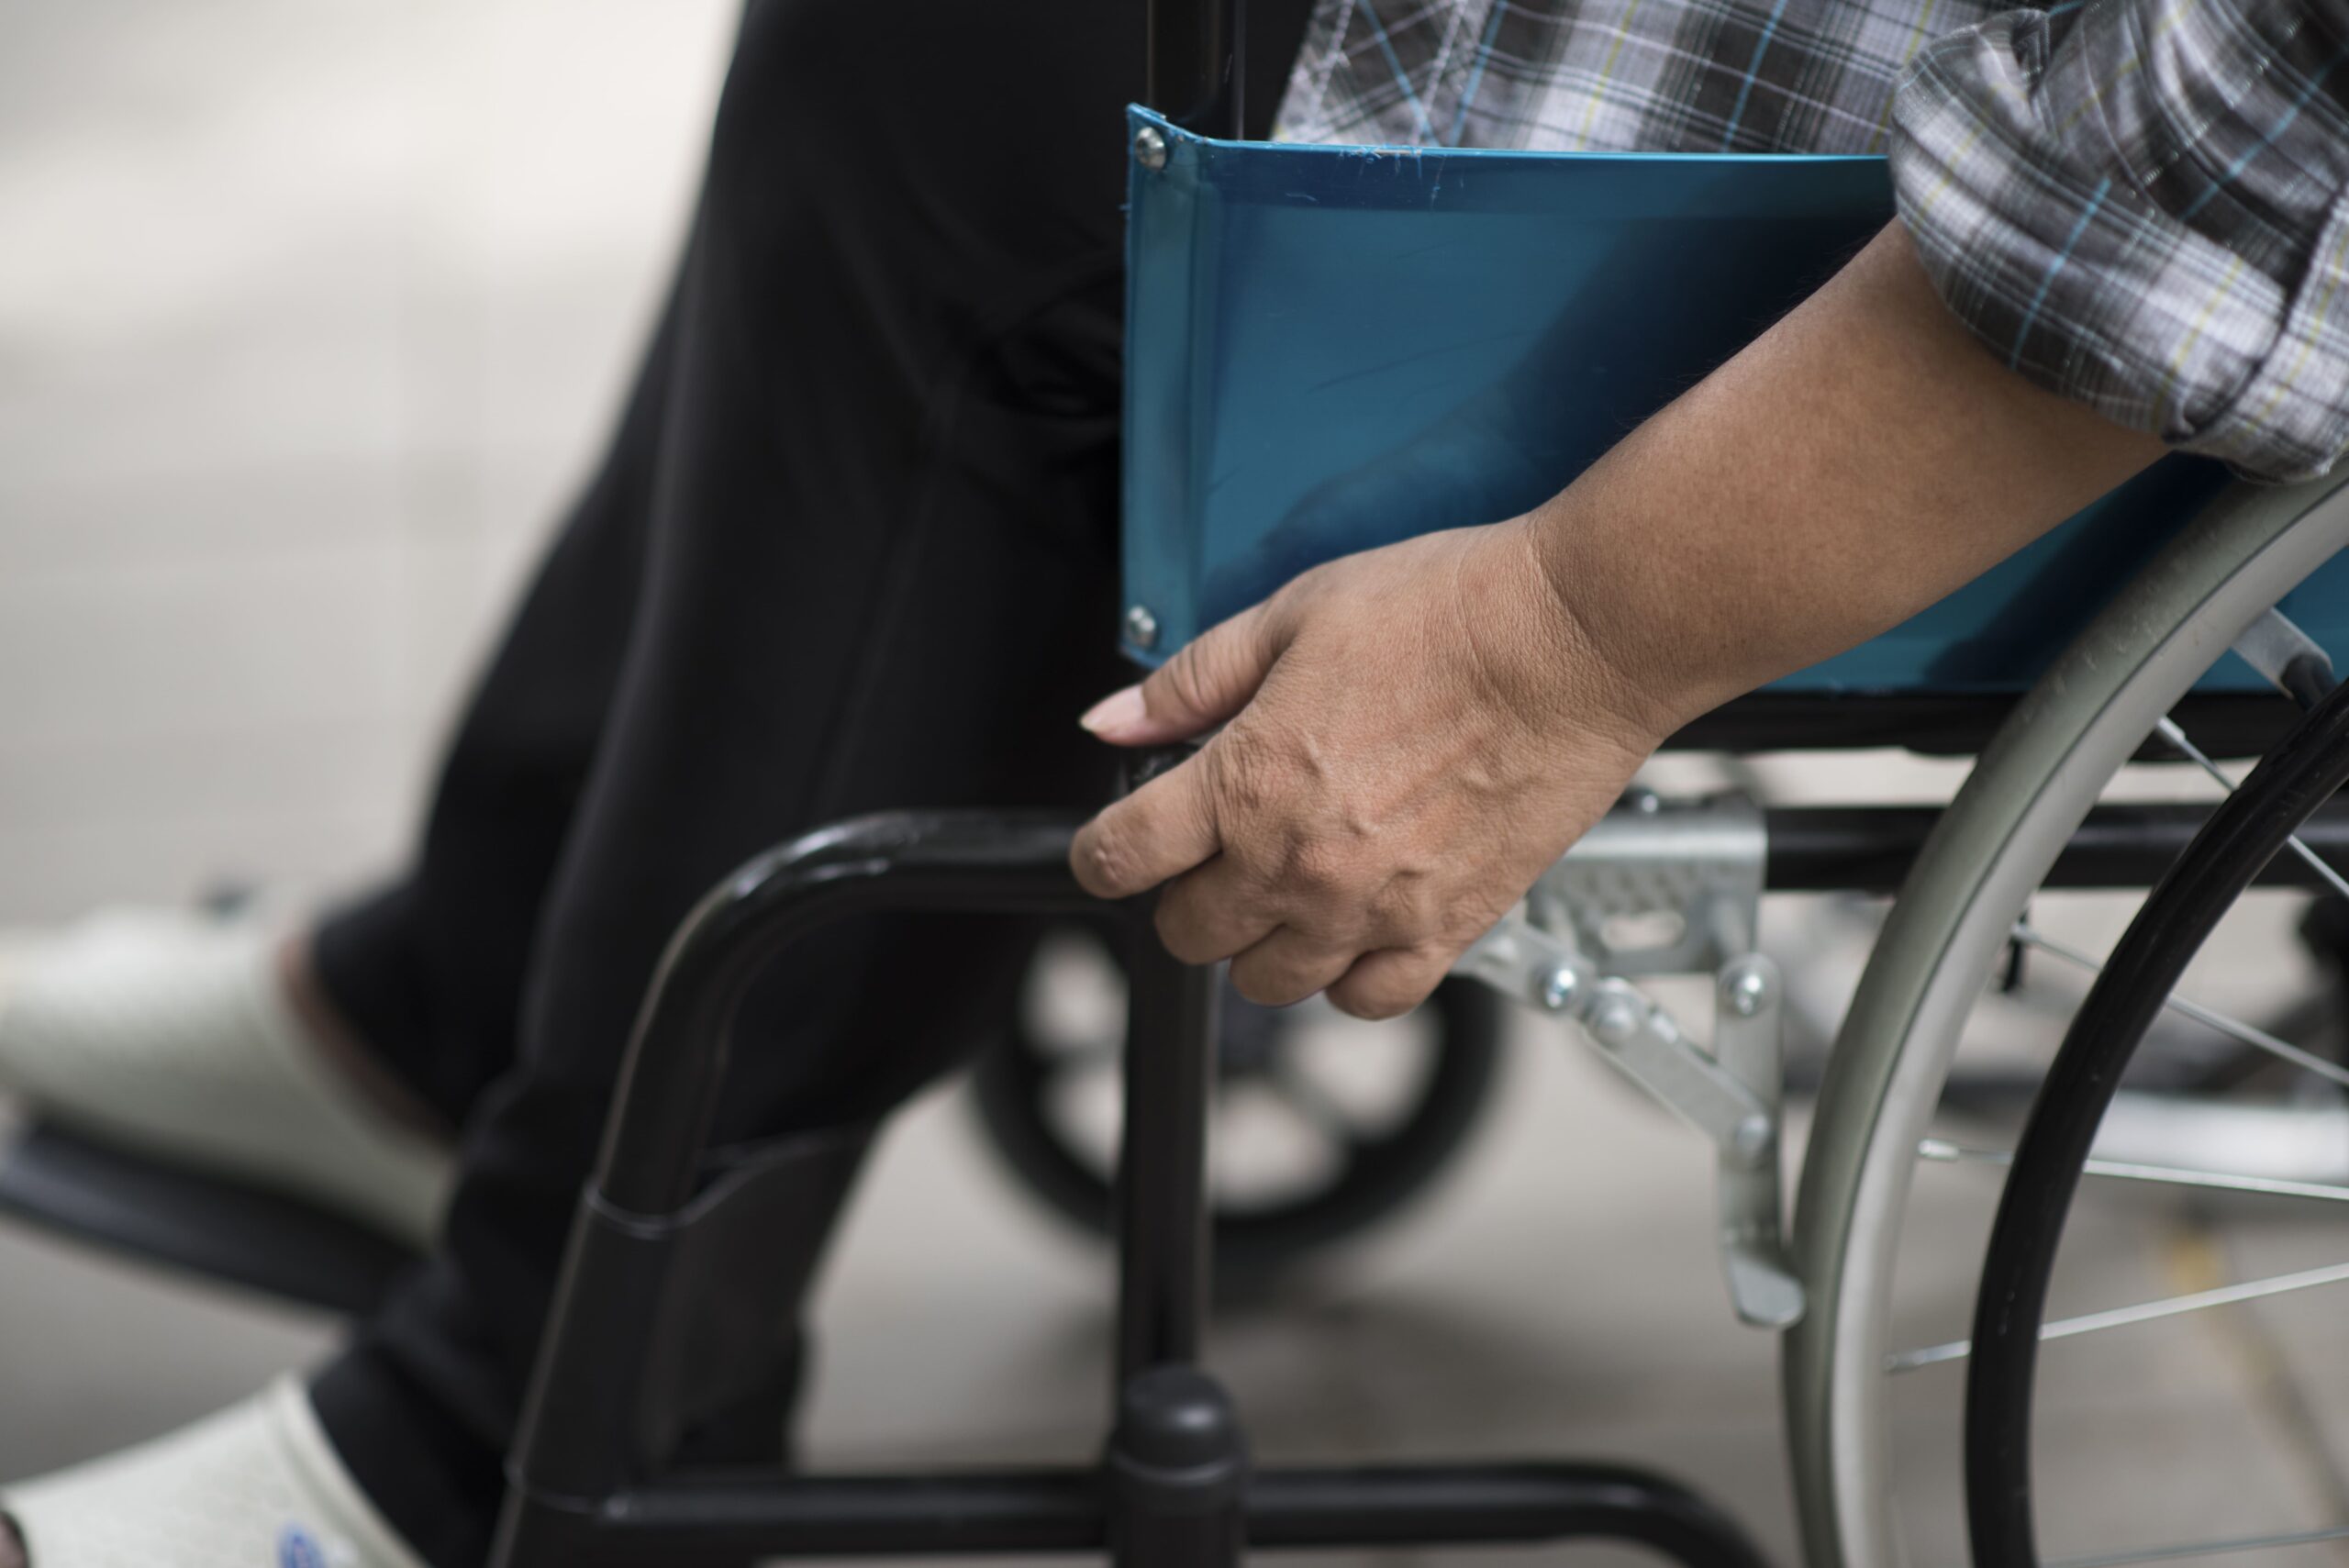 Cadeiras de rodas para pessoas com obesidade